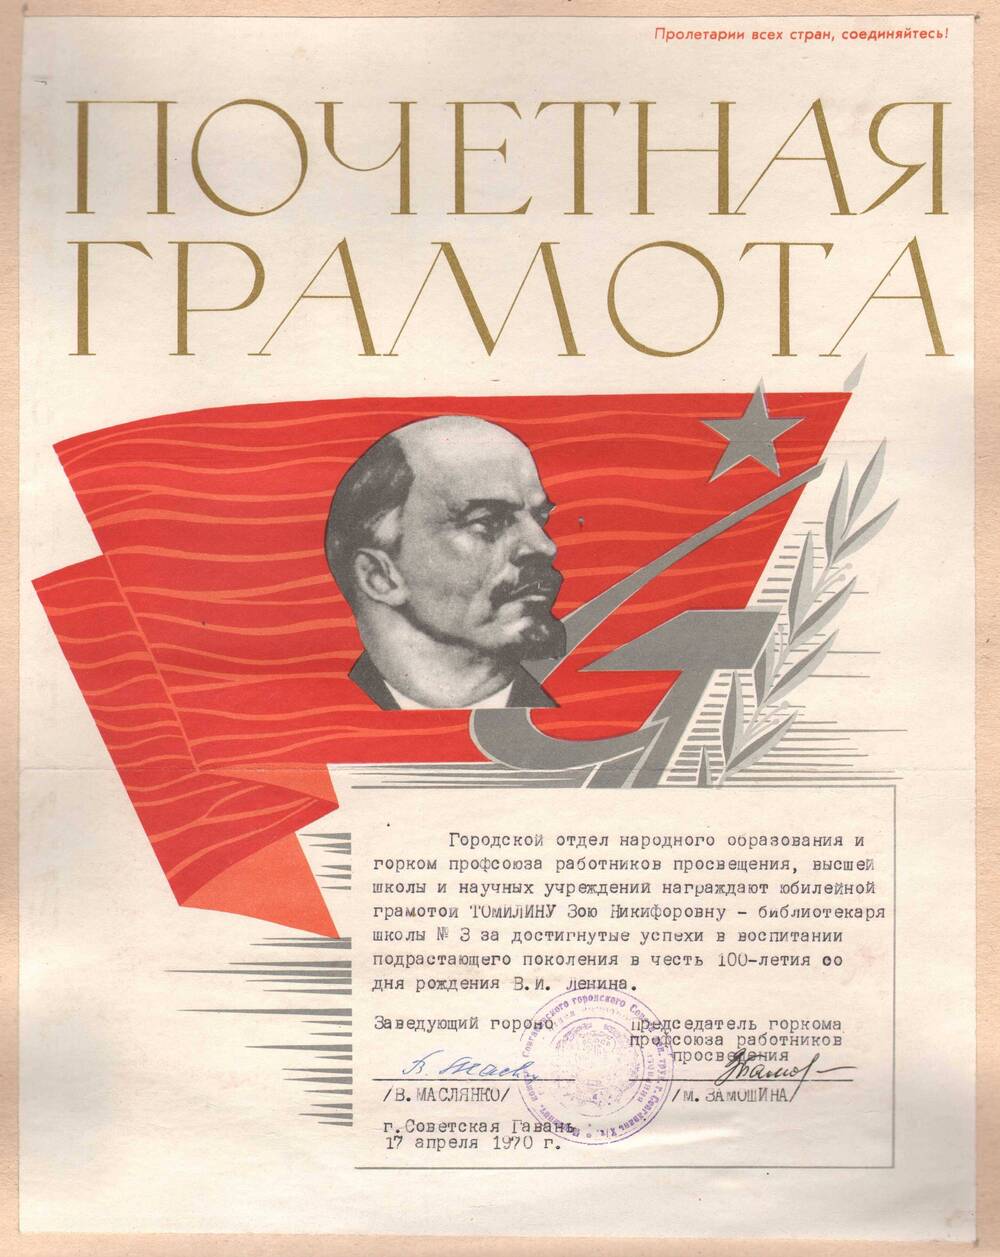 Почетная грамота Томилиной З.Н. в честь 100-летия со дня рождения В.И. Ленина